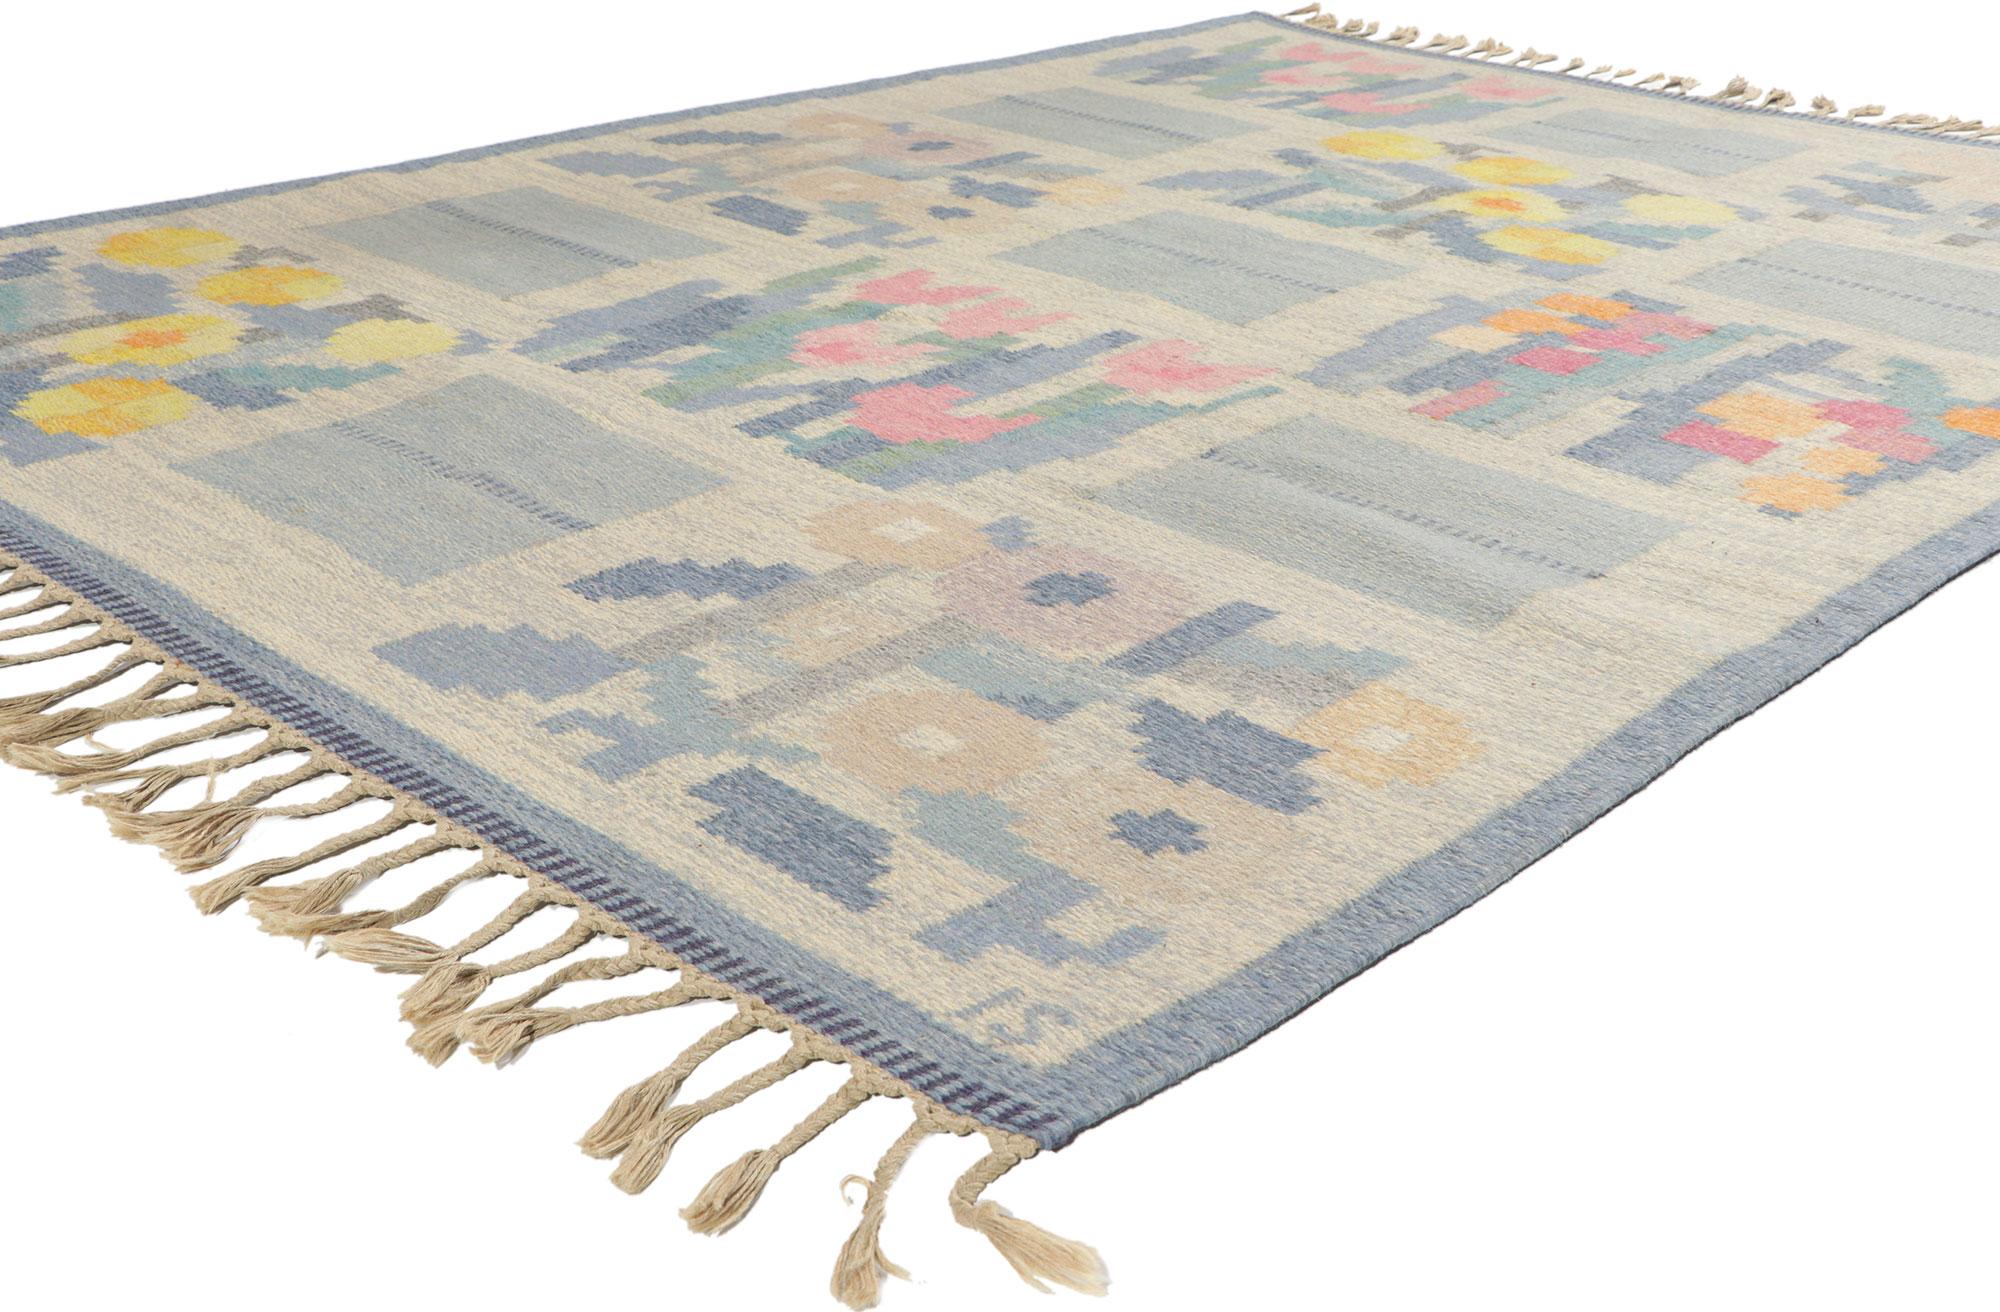 78496 Schwedischer Rollakan-Teppich Vintage By von Ingegerd Silow, 05'06 x 07'08.
Dieser handgewebte schwedische Rollakan-Teppich im skandinavisch-modernen Stil besticht durch seine unglaubliche Detailtreue und Textur und ist eine faszinierende